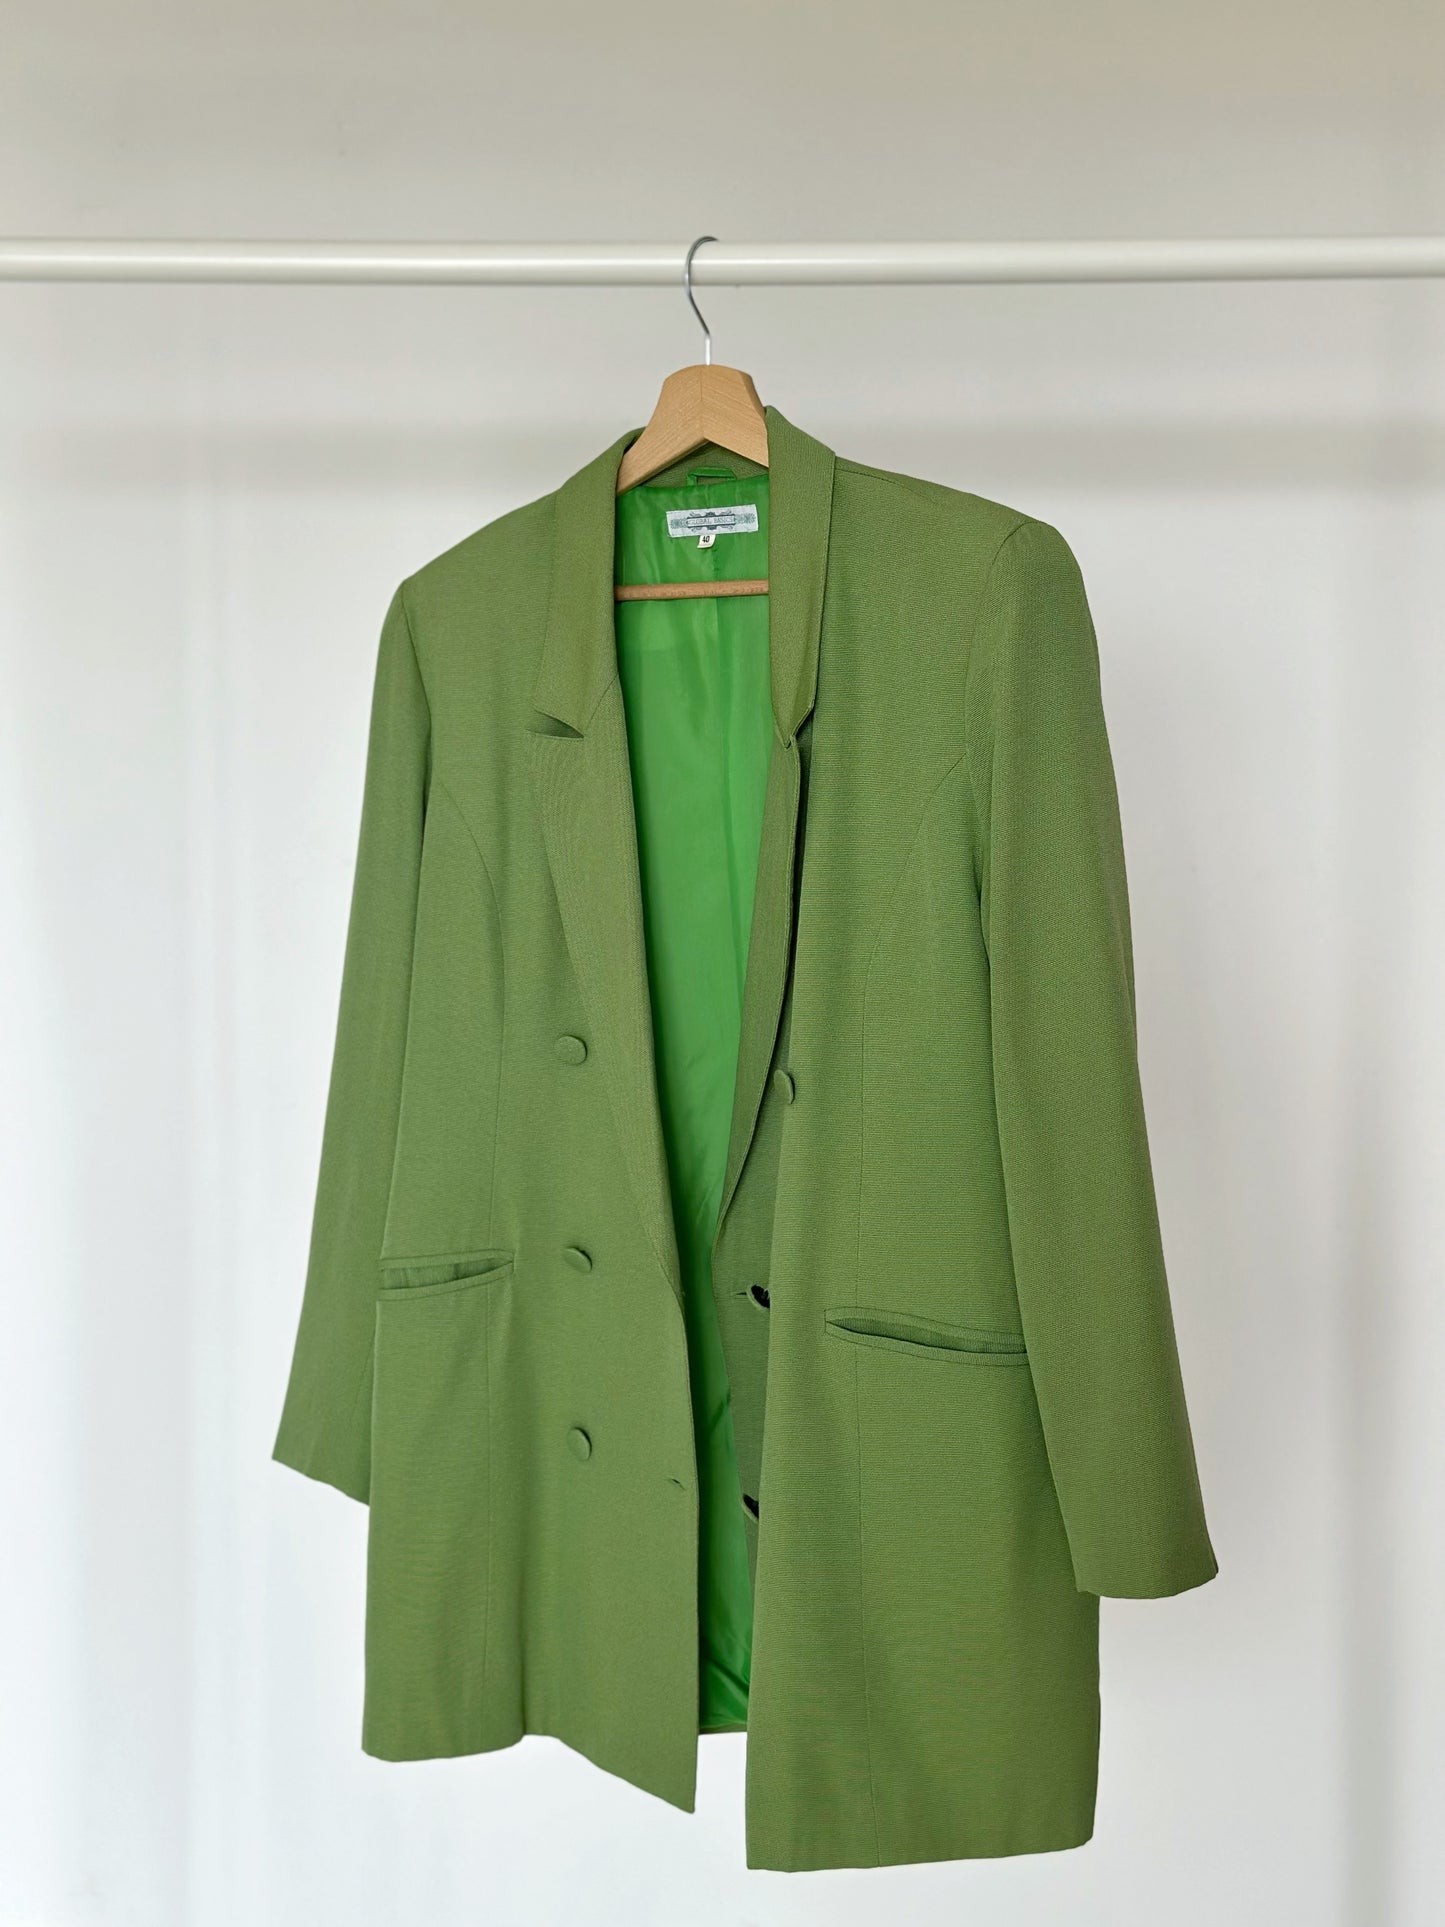 Stunning vintage green blazer